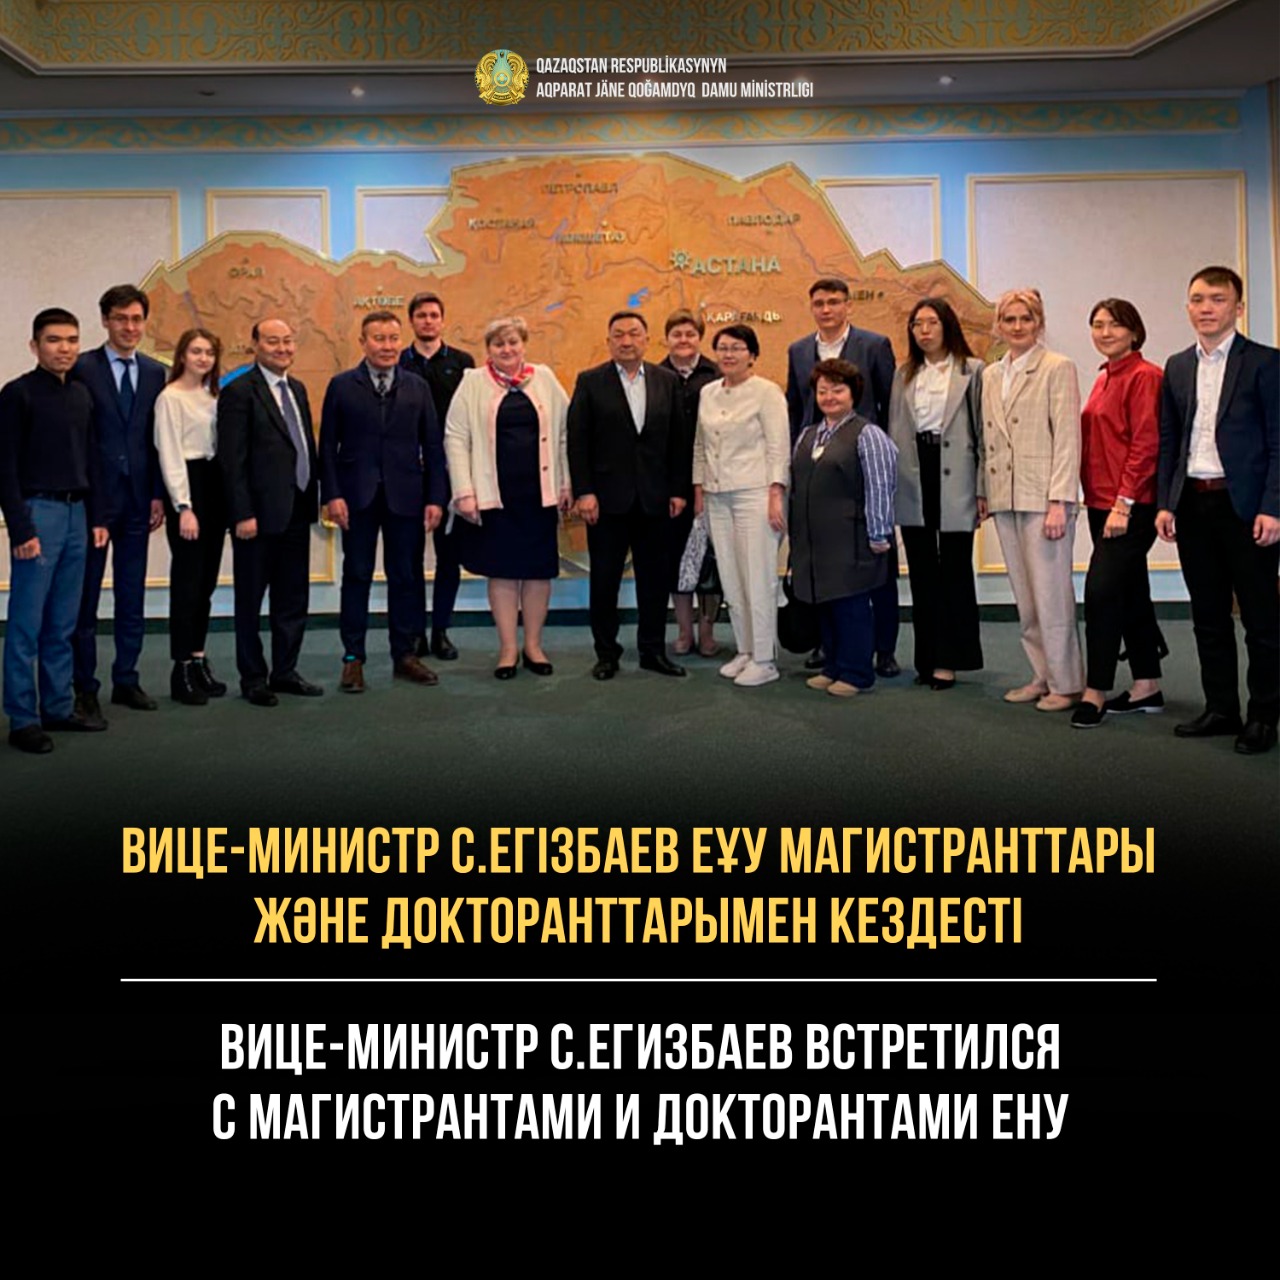 Вице-министр С.Егизбаев встретился с магистрантами и докторантами ЕНУ